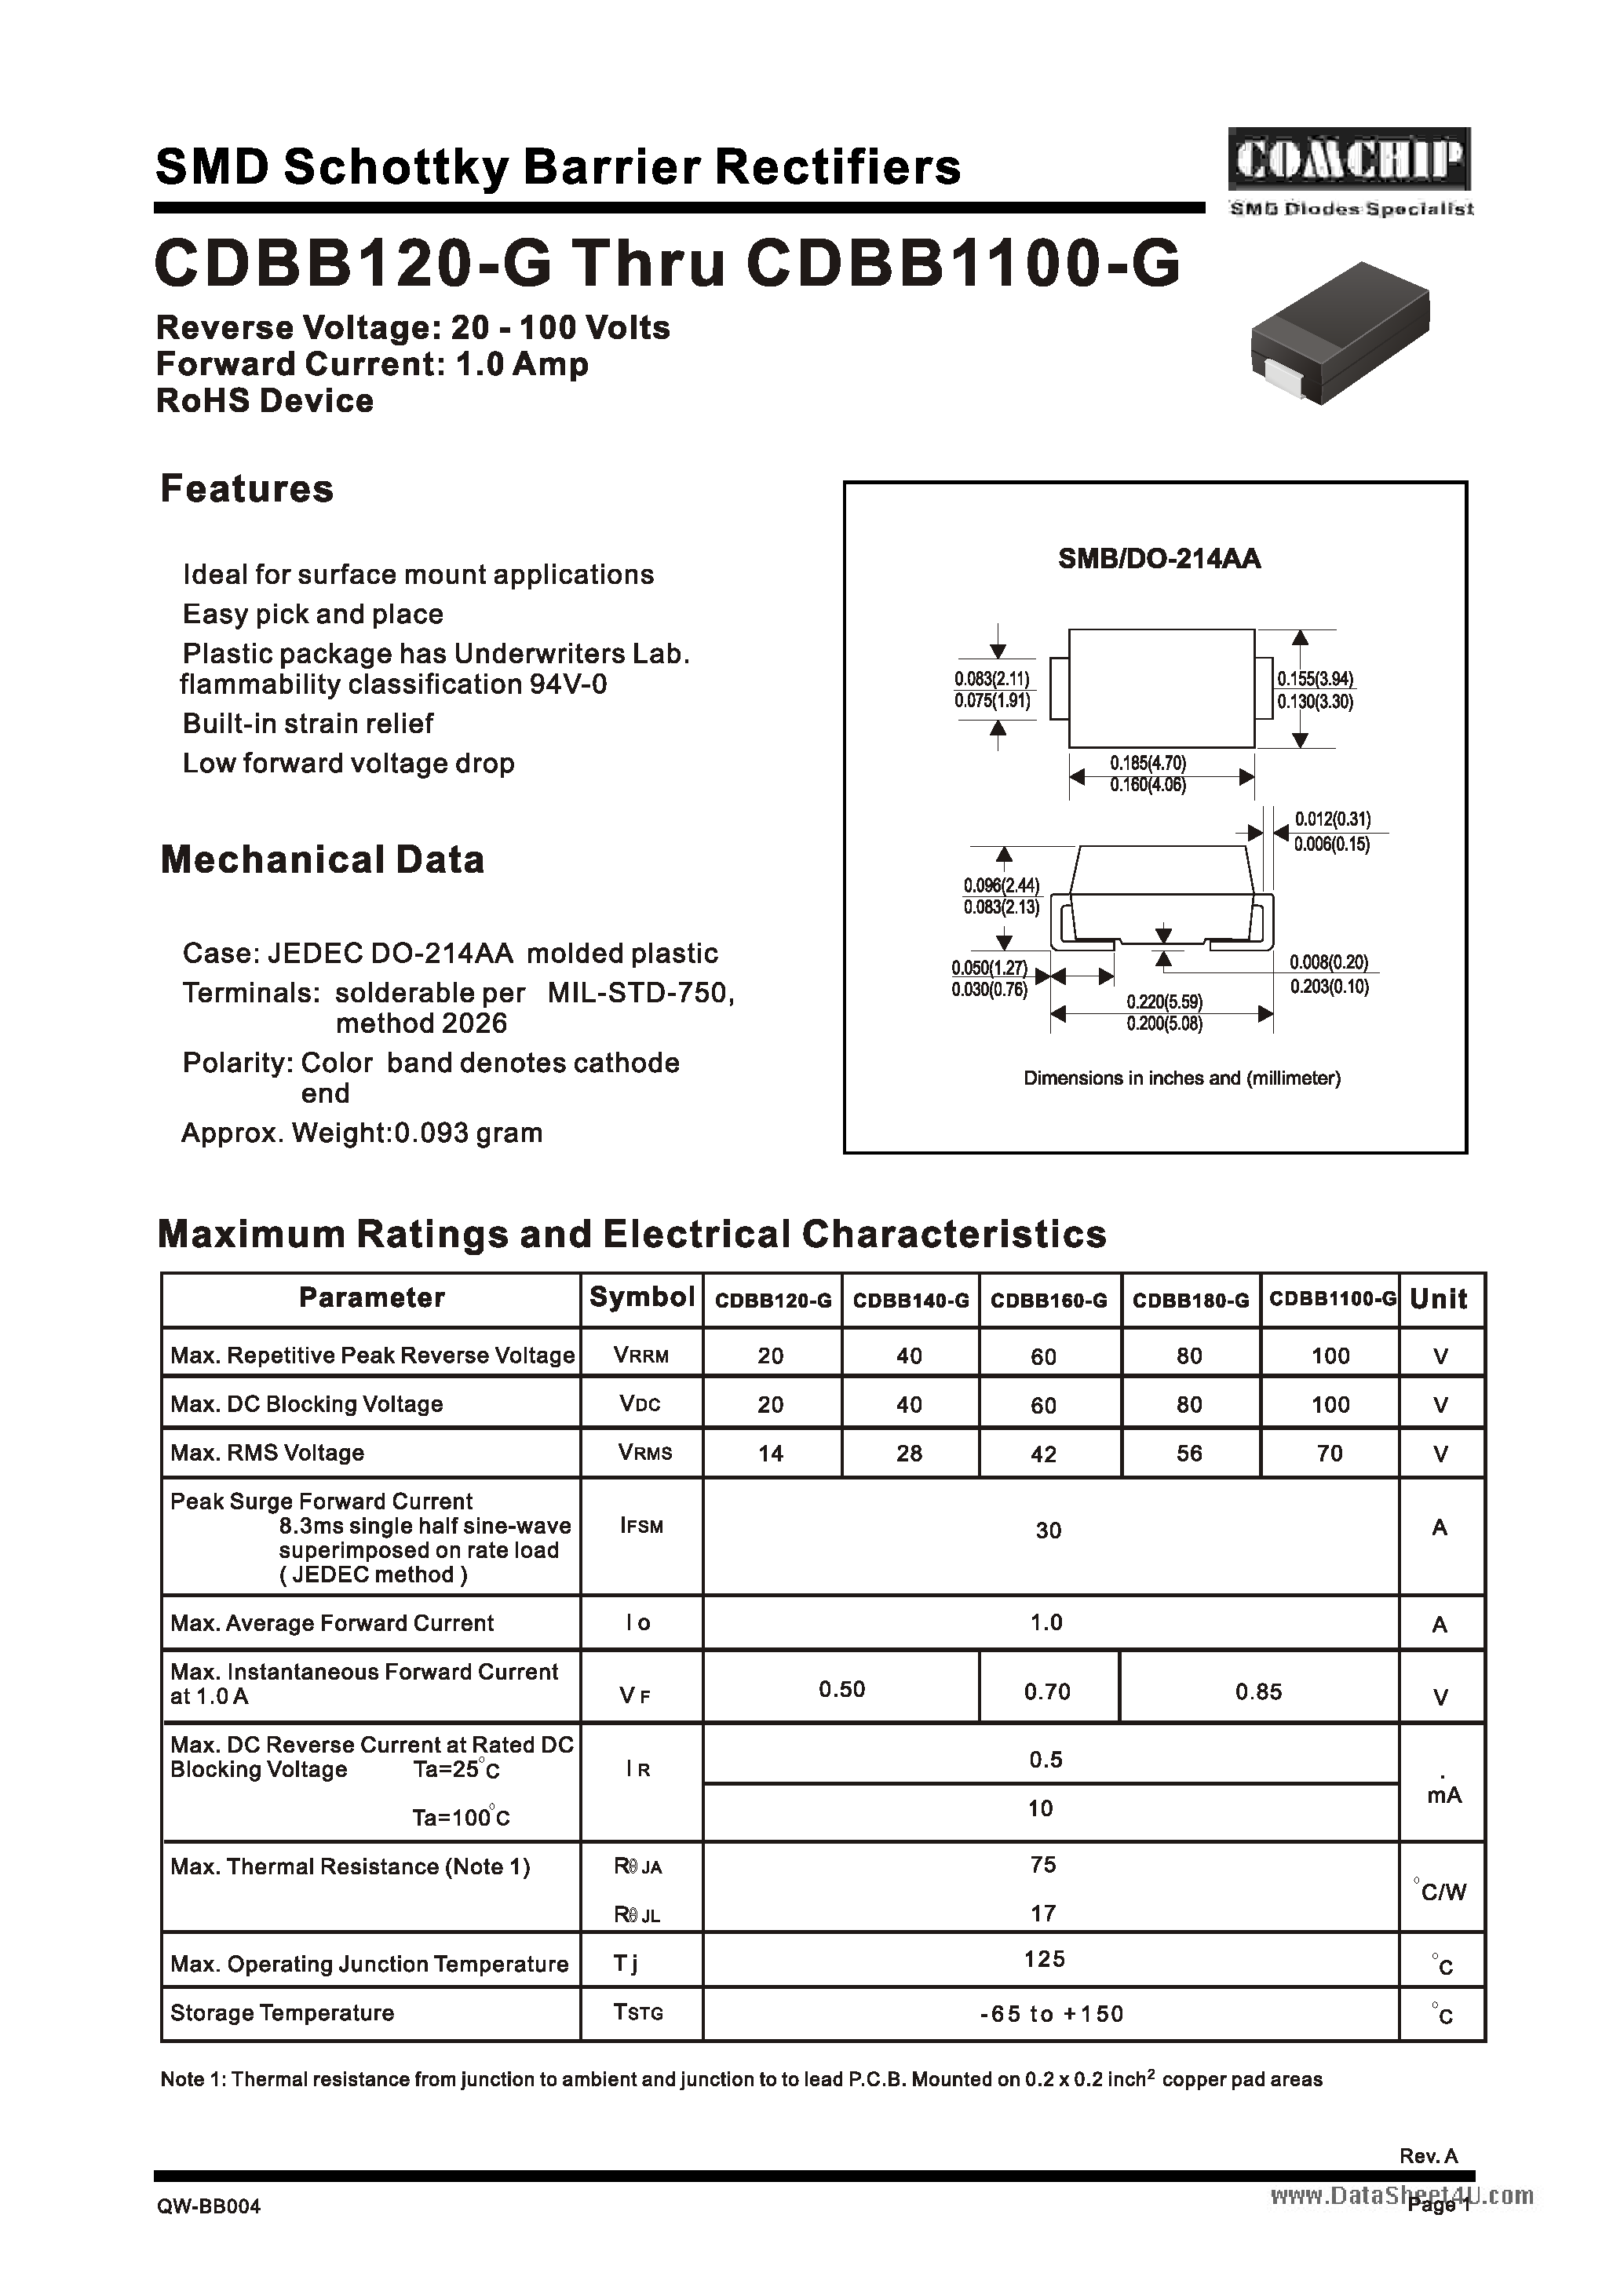 Даташит CDBB1100-G - (CDBB120-G - CDBB1100-G) SMD Schottky Barrier Rectifiers страница 1